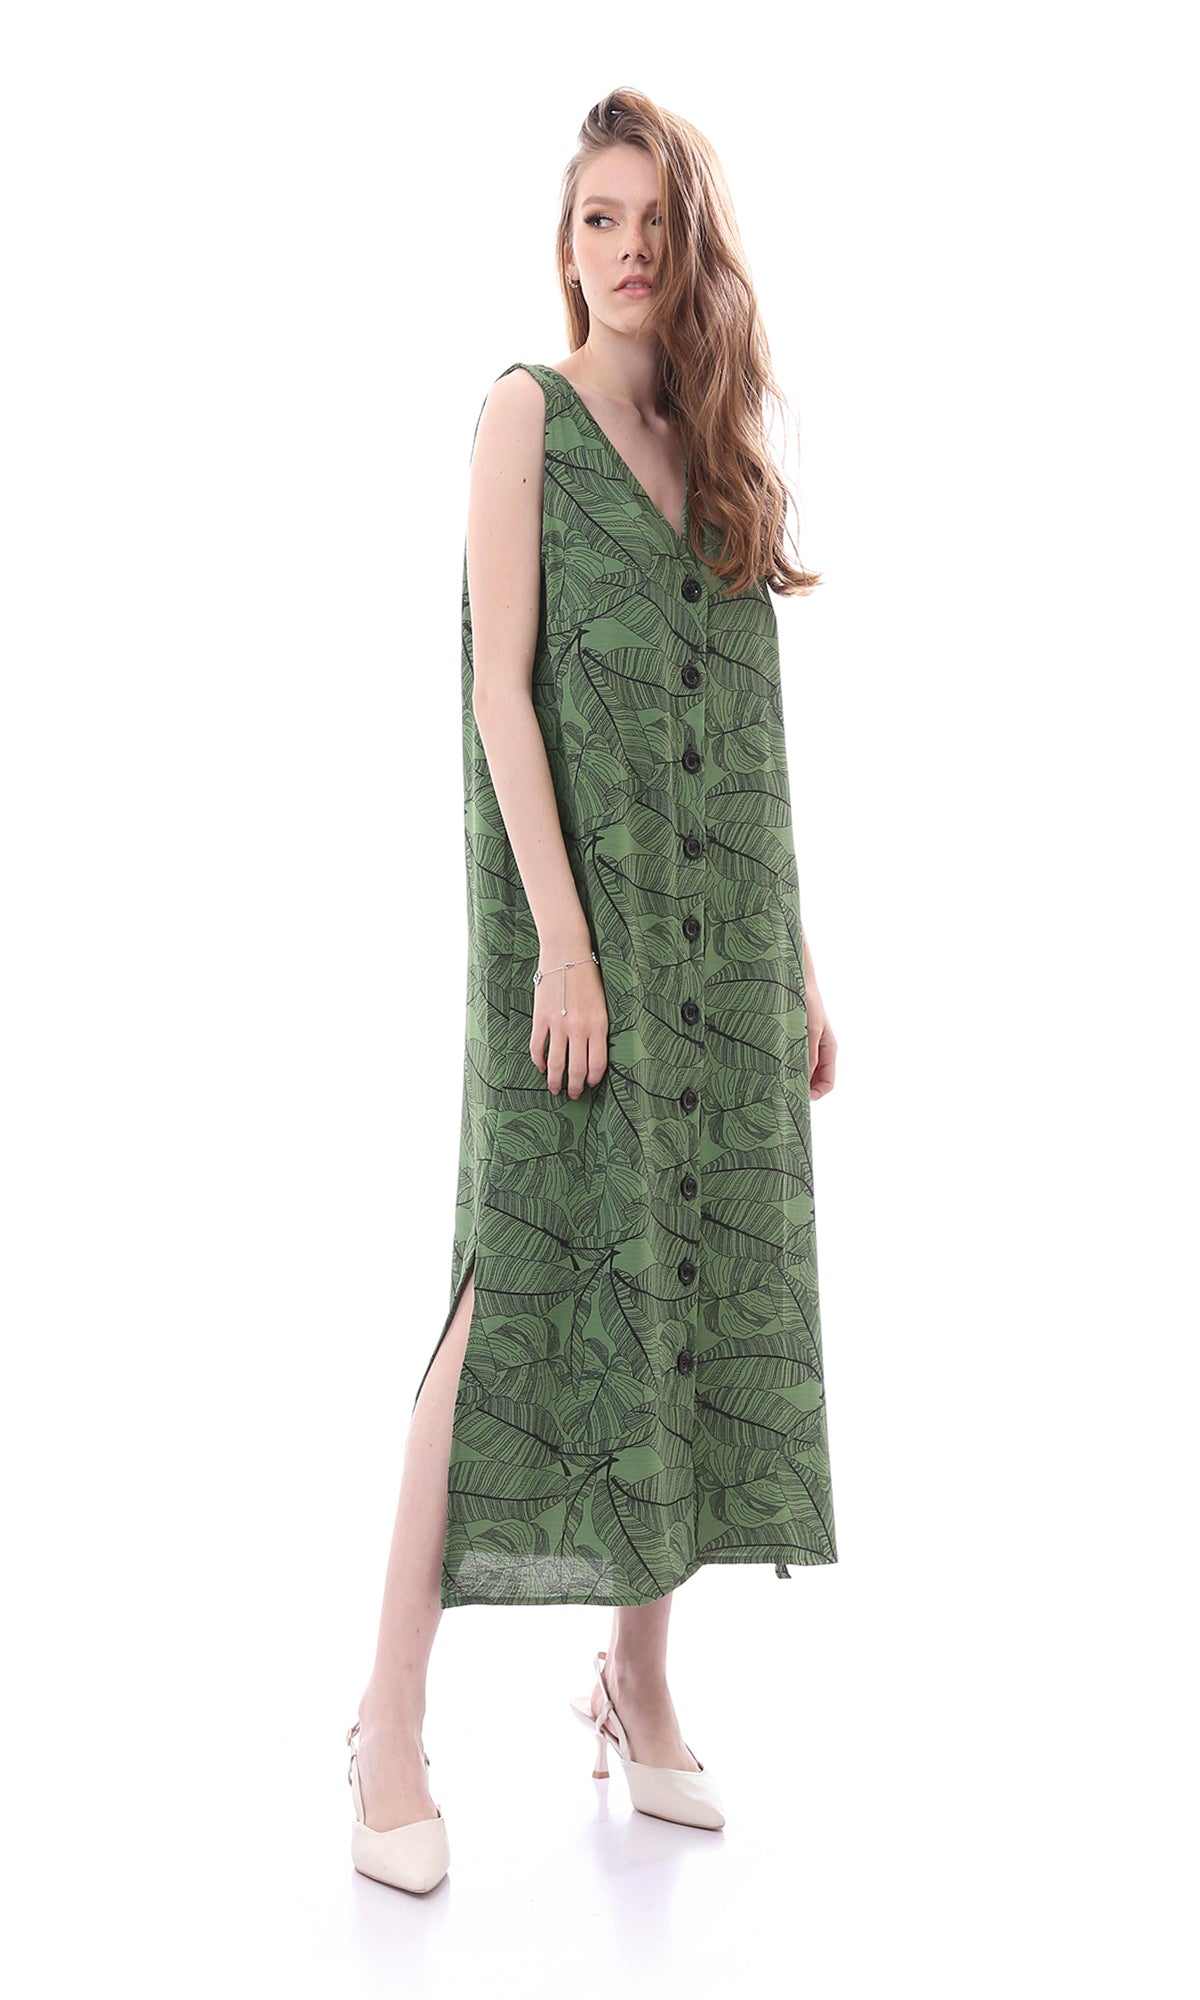 O165061 Comfy Slip On Olive Dress With Side Slits